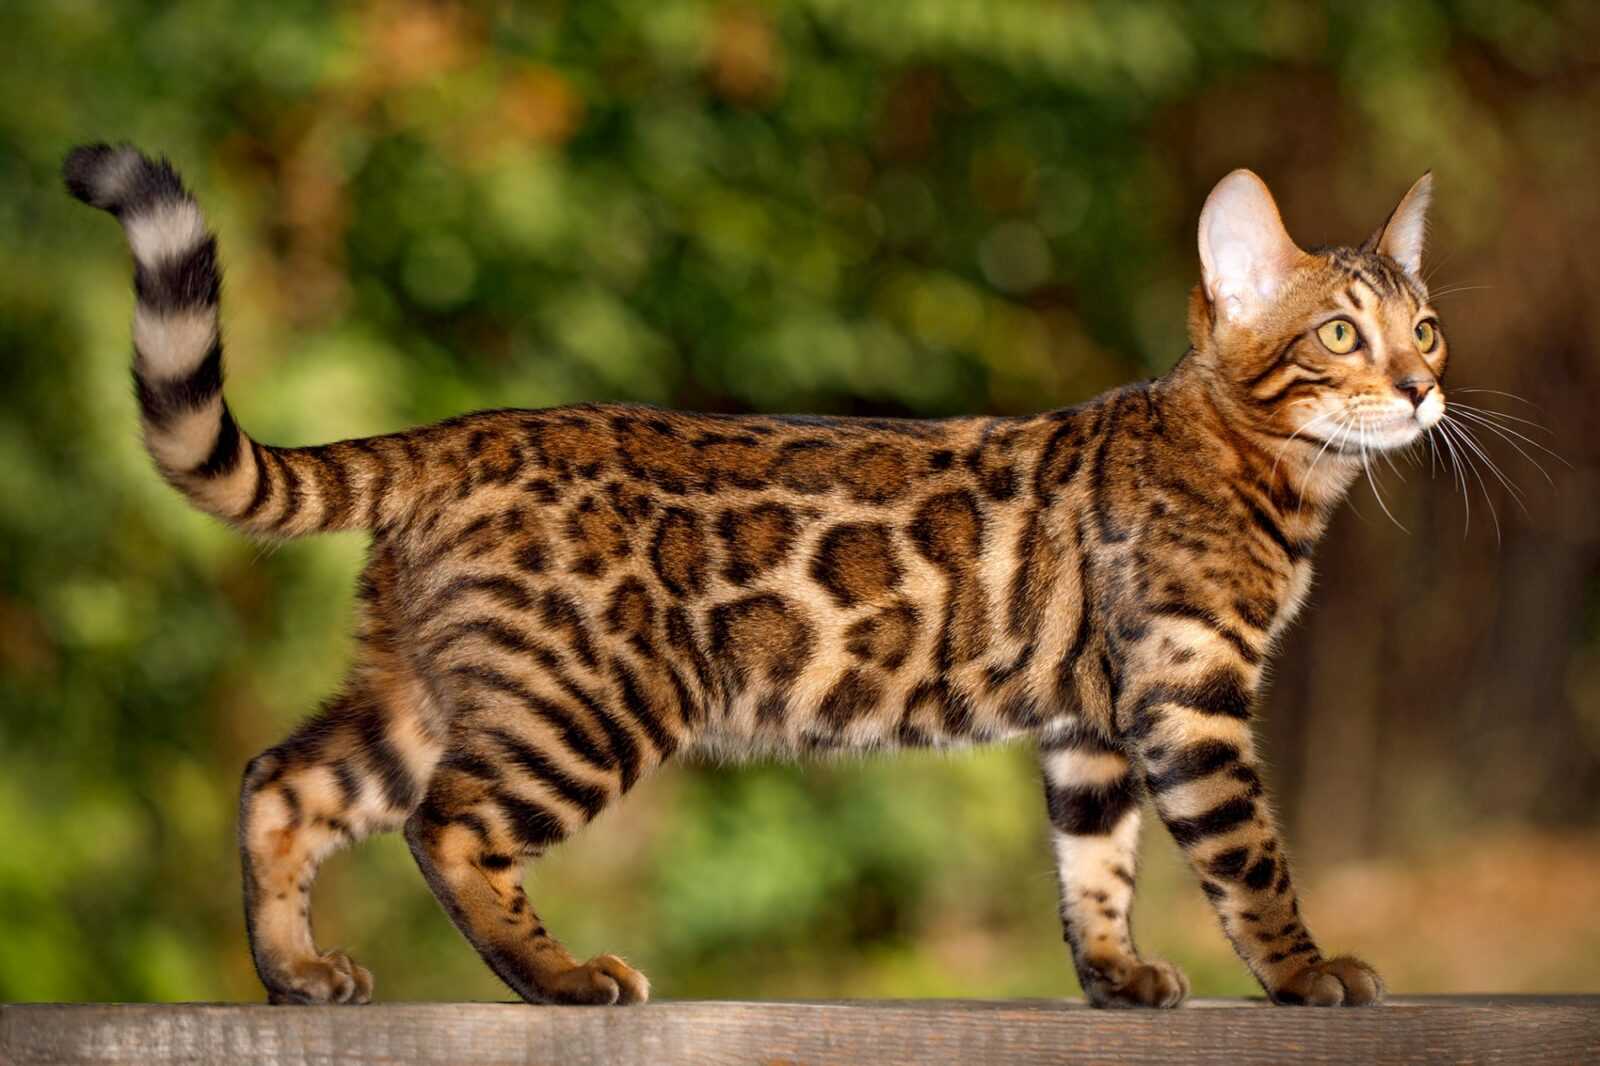 Бенгальская порода домашних кошек является межродовым гибридом домашней кошки и бенгальской дикой кошки